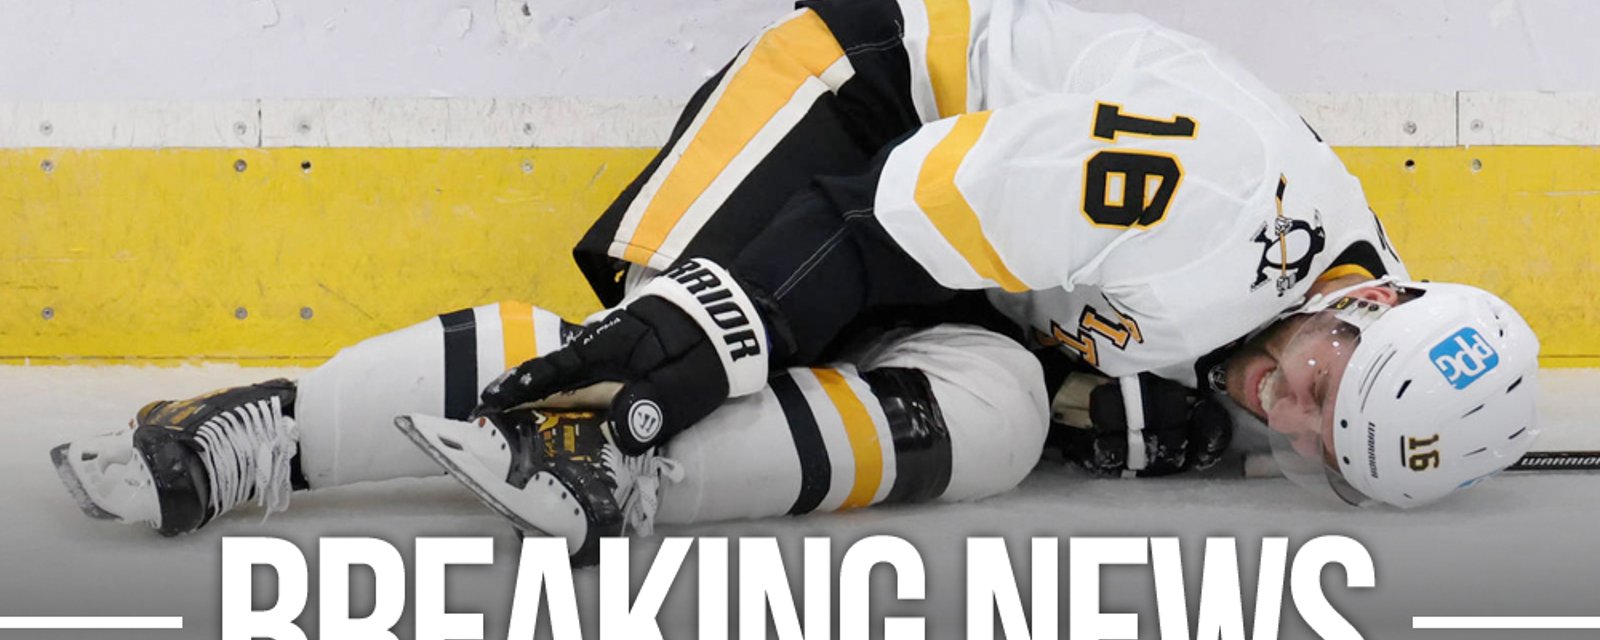 Penguins confirm the worst for veteran forward Jason Zucker